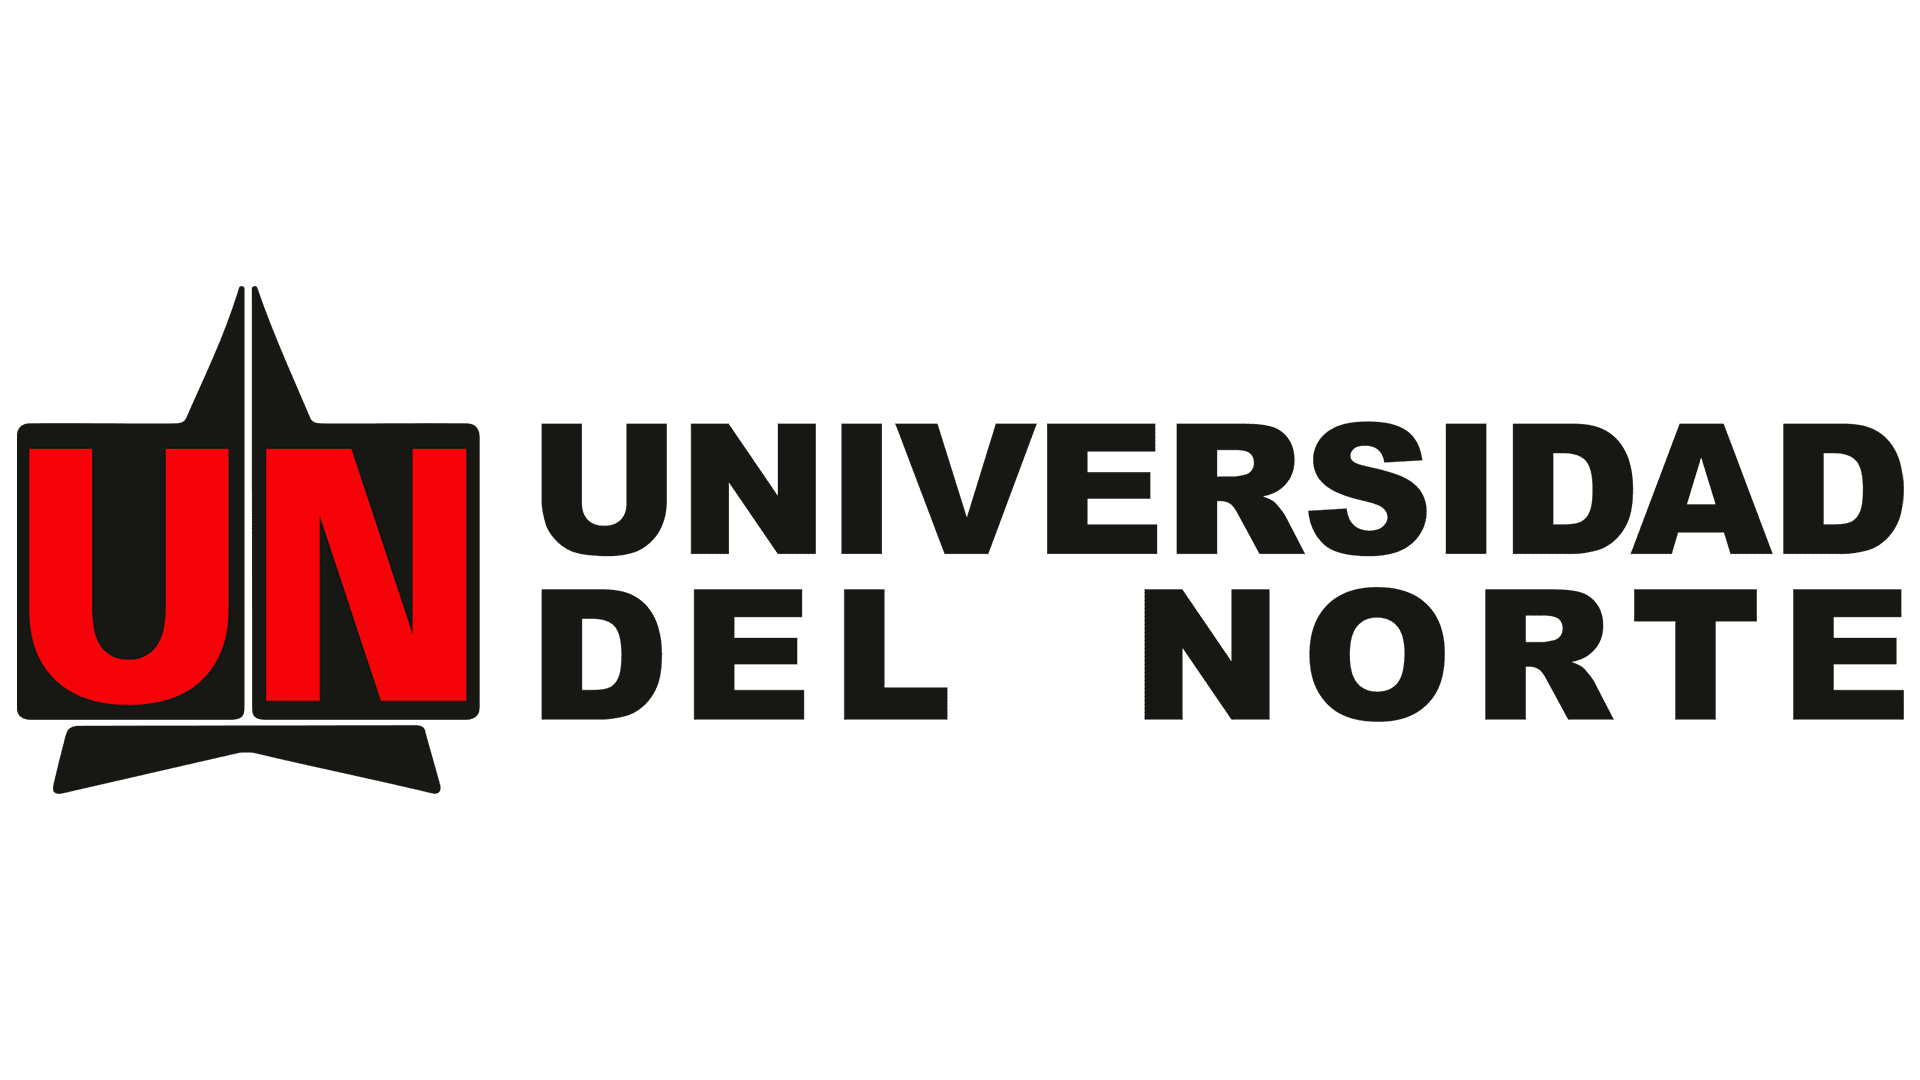 Logo de la Universidad del Norte